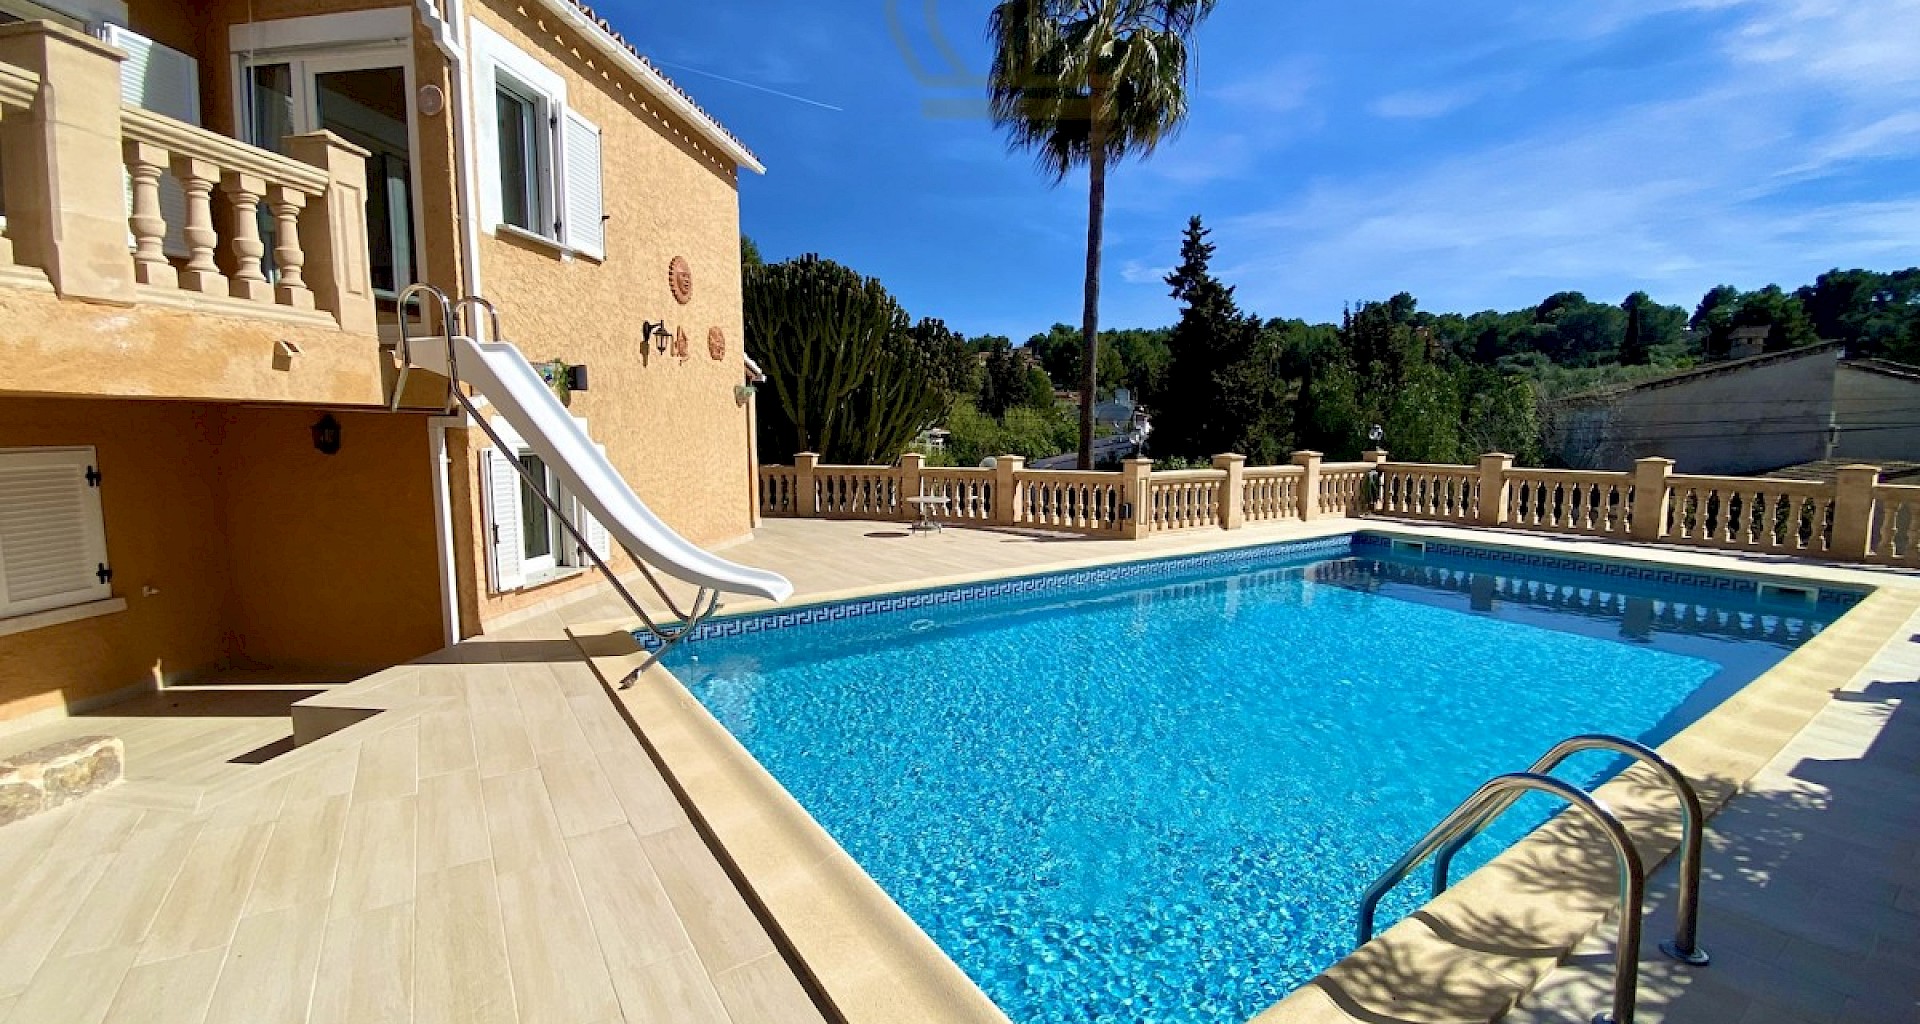 KROHN & LUEDEMANN Chalet en Costa de la Calma de estilo mediterraneo con piscina privada Familienvilla in Costa de la Calma